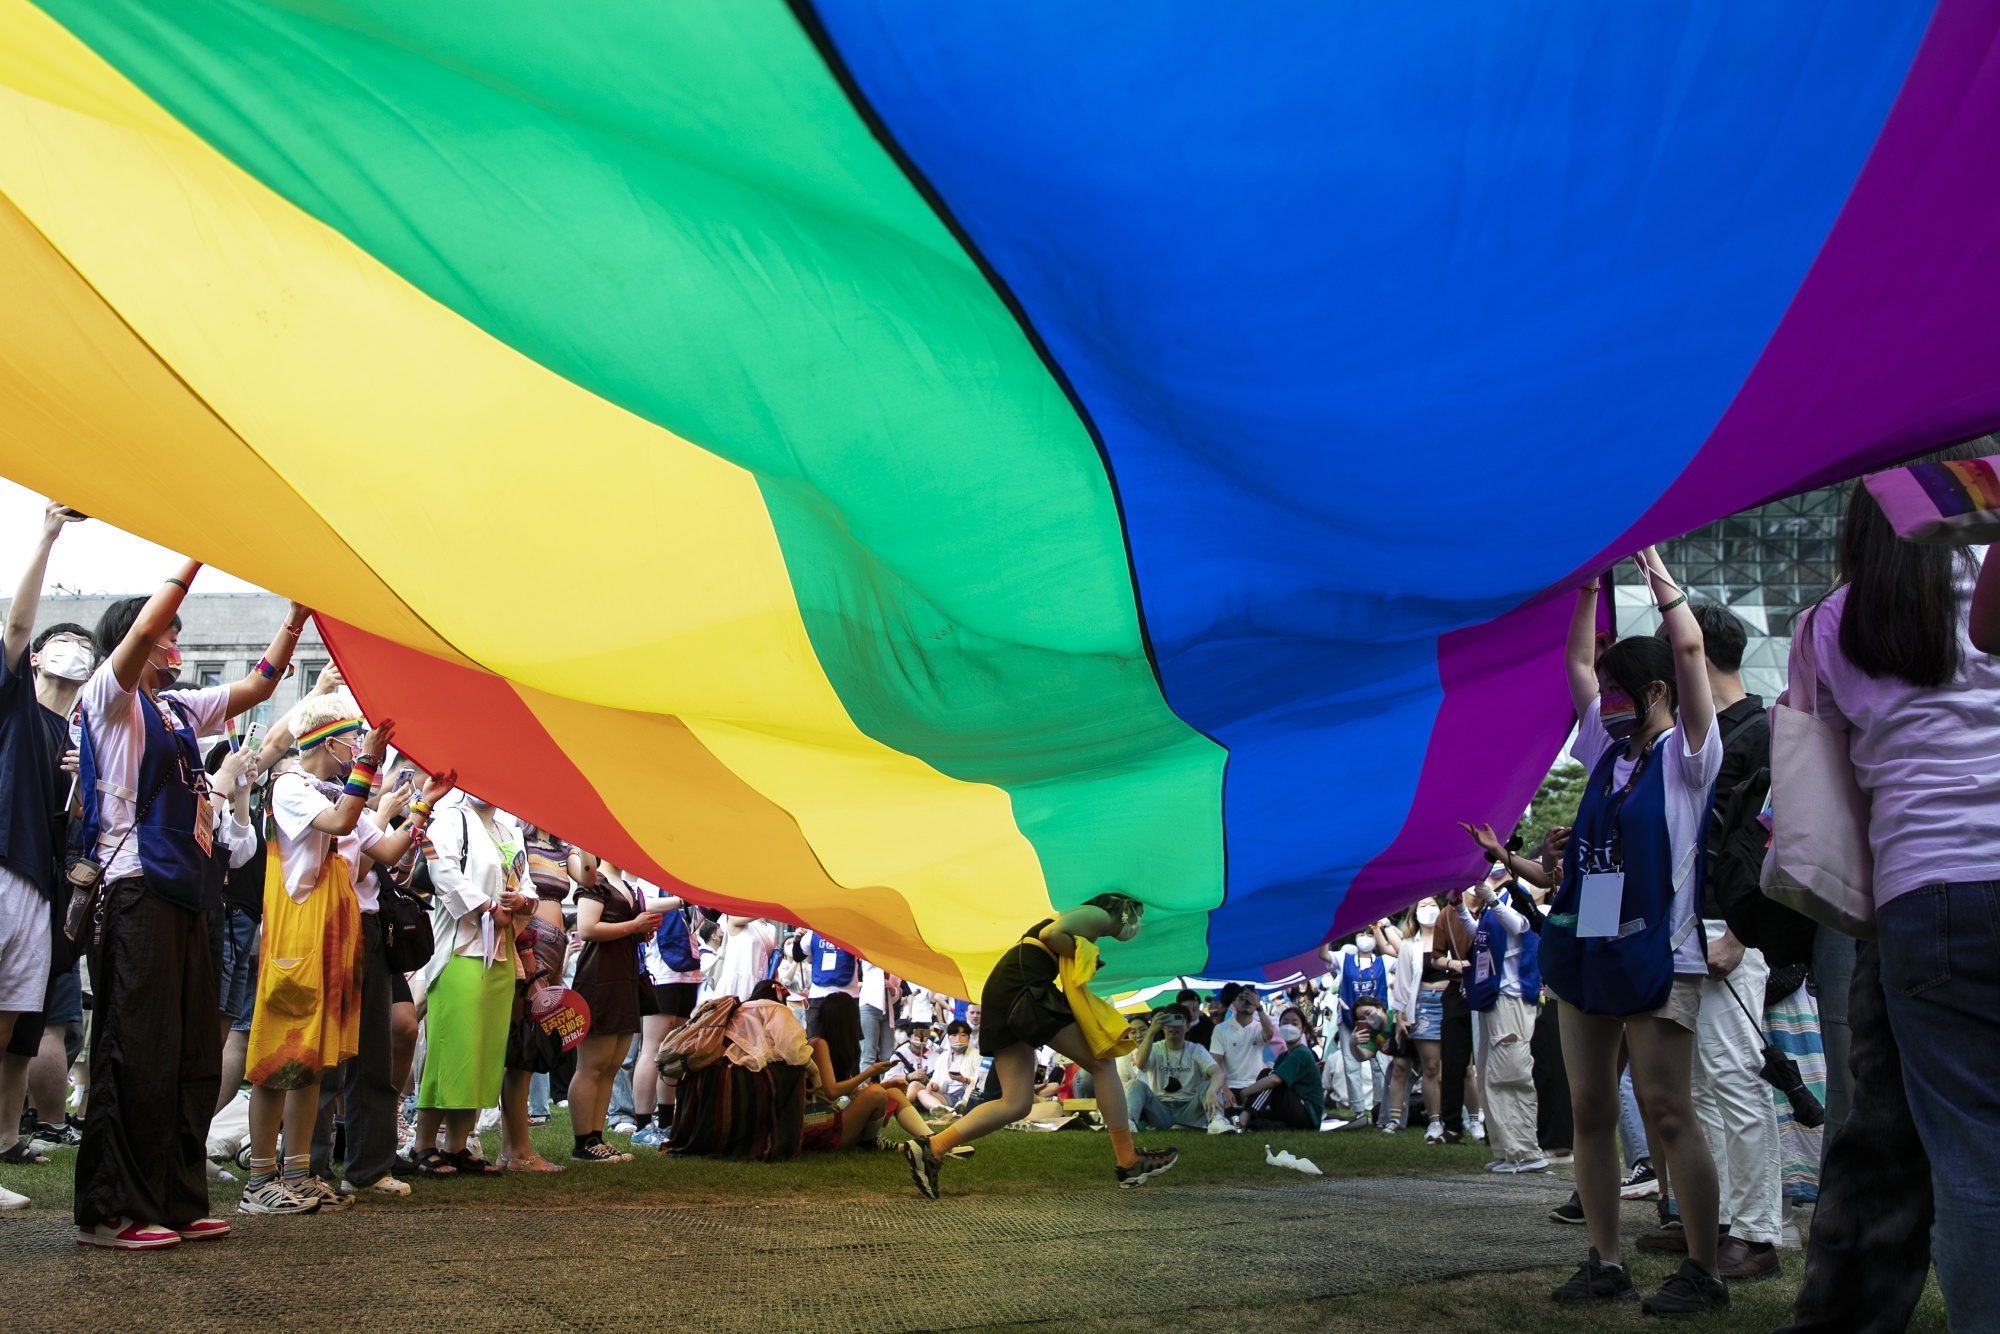 Seoul Pride Goes Ahead Despite Anti-LGBTQ Sentiment in Conservative Korea